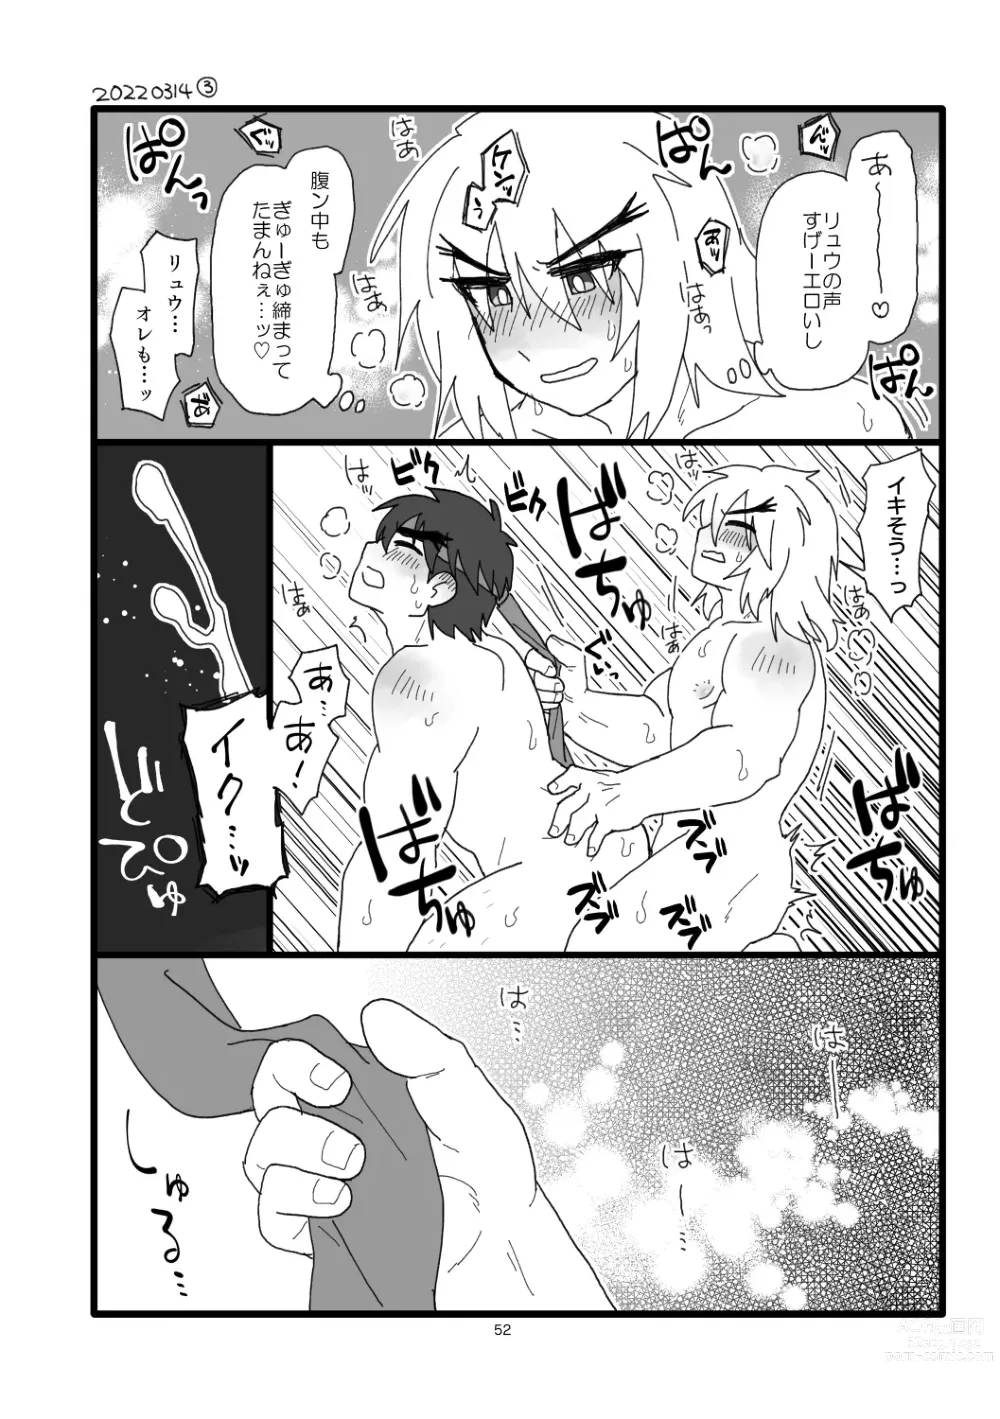 Page 51 of doujinshi Kobushi Kiss